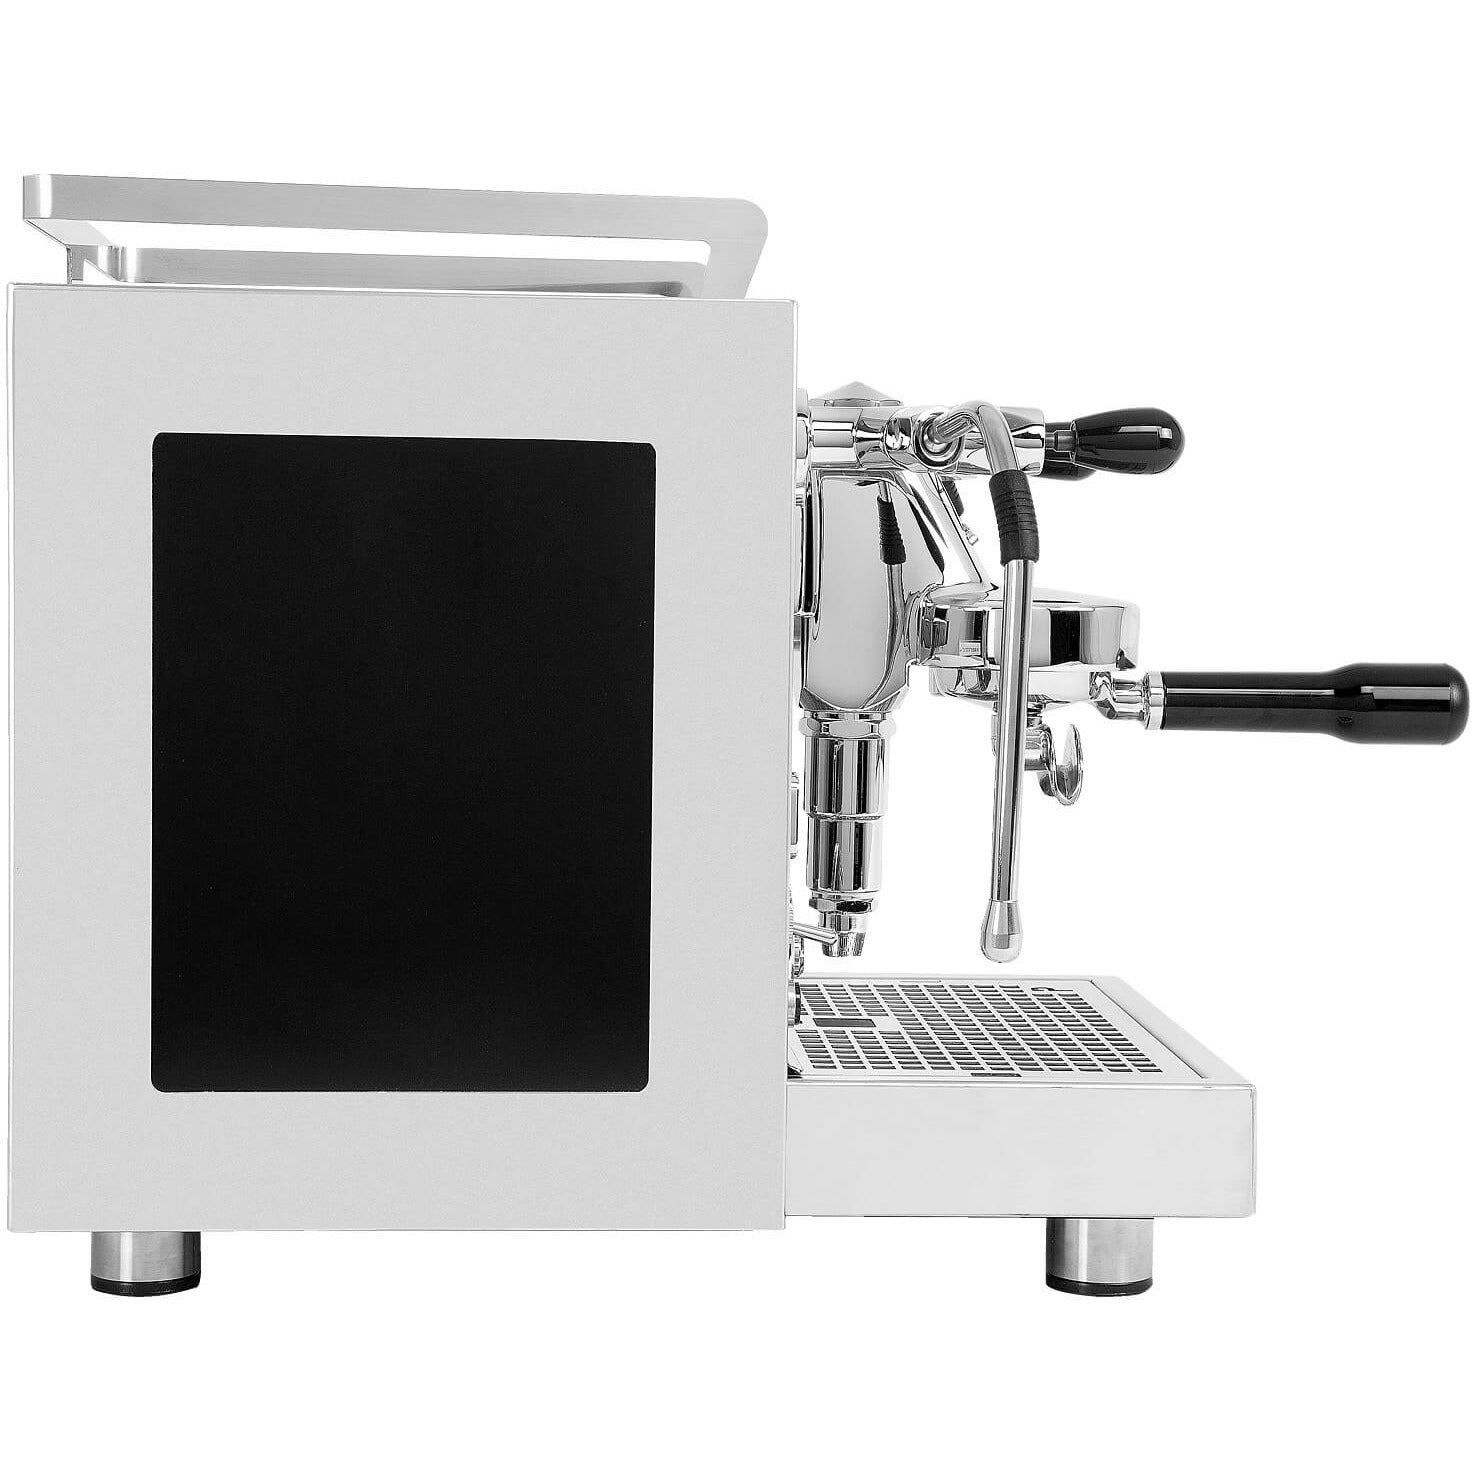 Profitec PRO 600 mit Kipphebeln und Fast Heat Up, DUALBOILER-SIEBTRÄGERMASCHINE MIT PID-STEUERUNG Espressomaschinen Profitec Chrom / Inox   - Rheinland.Coffee